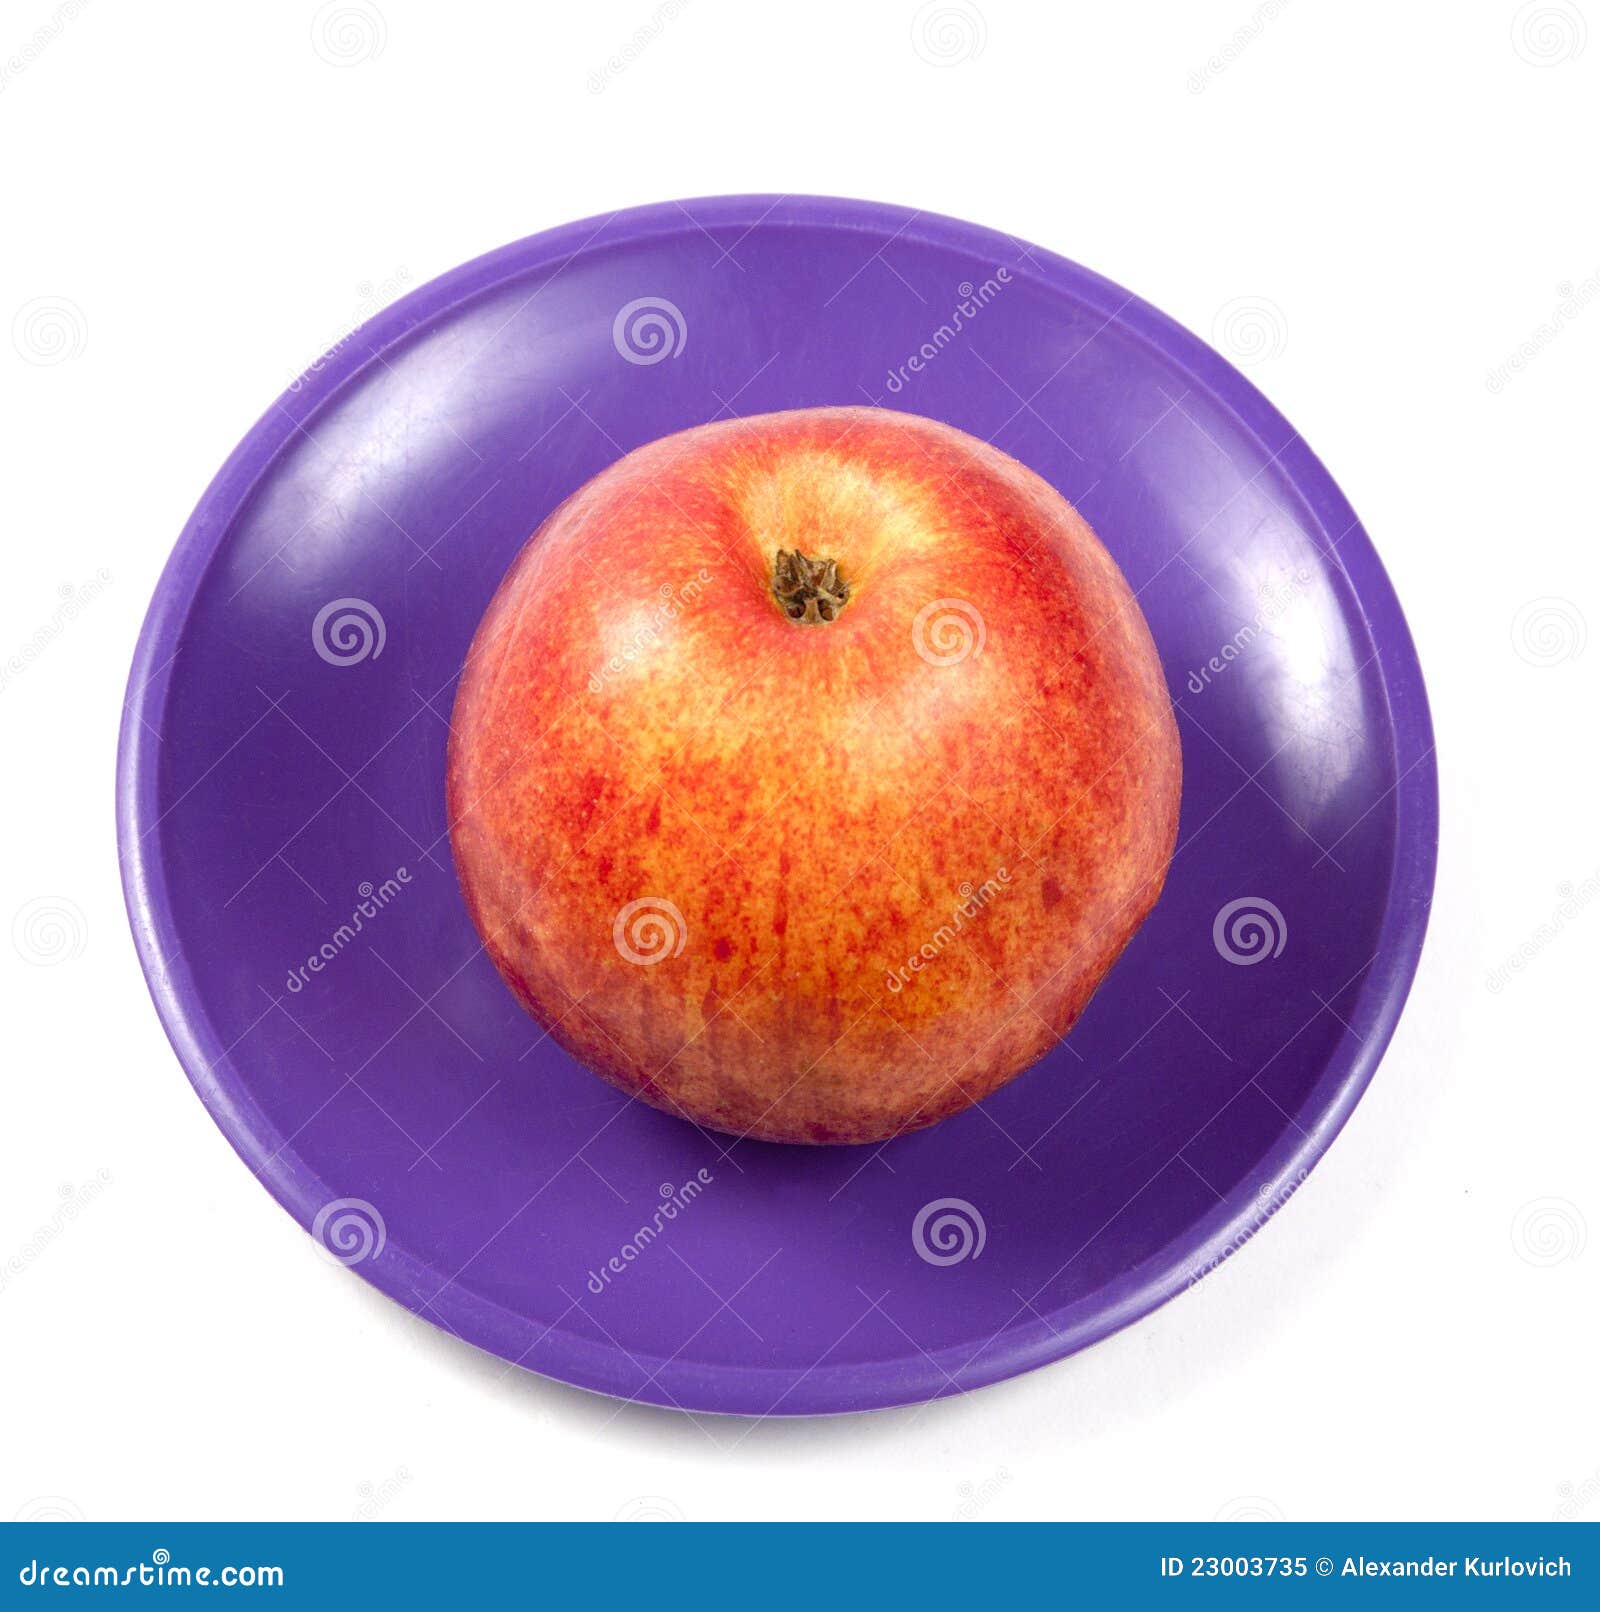 На тарелке лежат красные. Яблоко на тарелке. Яблоко на блюдце. Яблочко на блюдце. Яблоко на тарелочке.